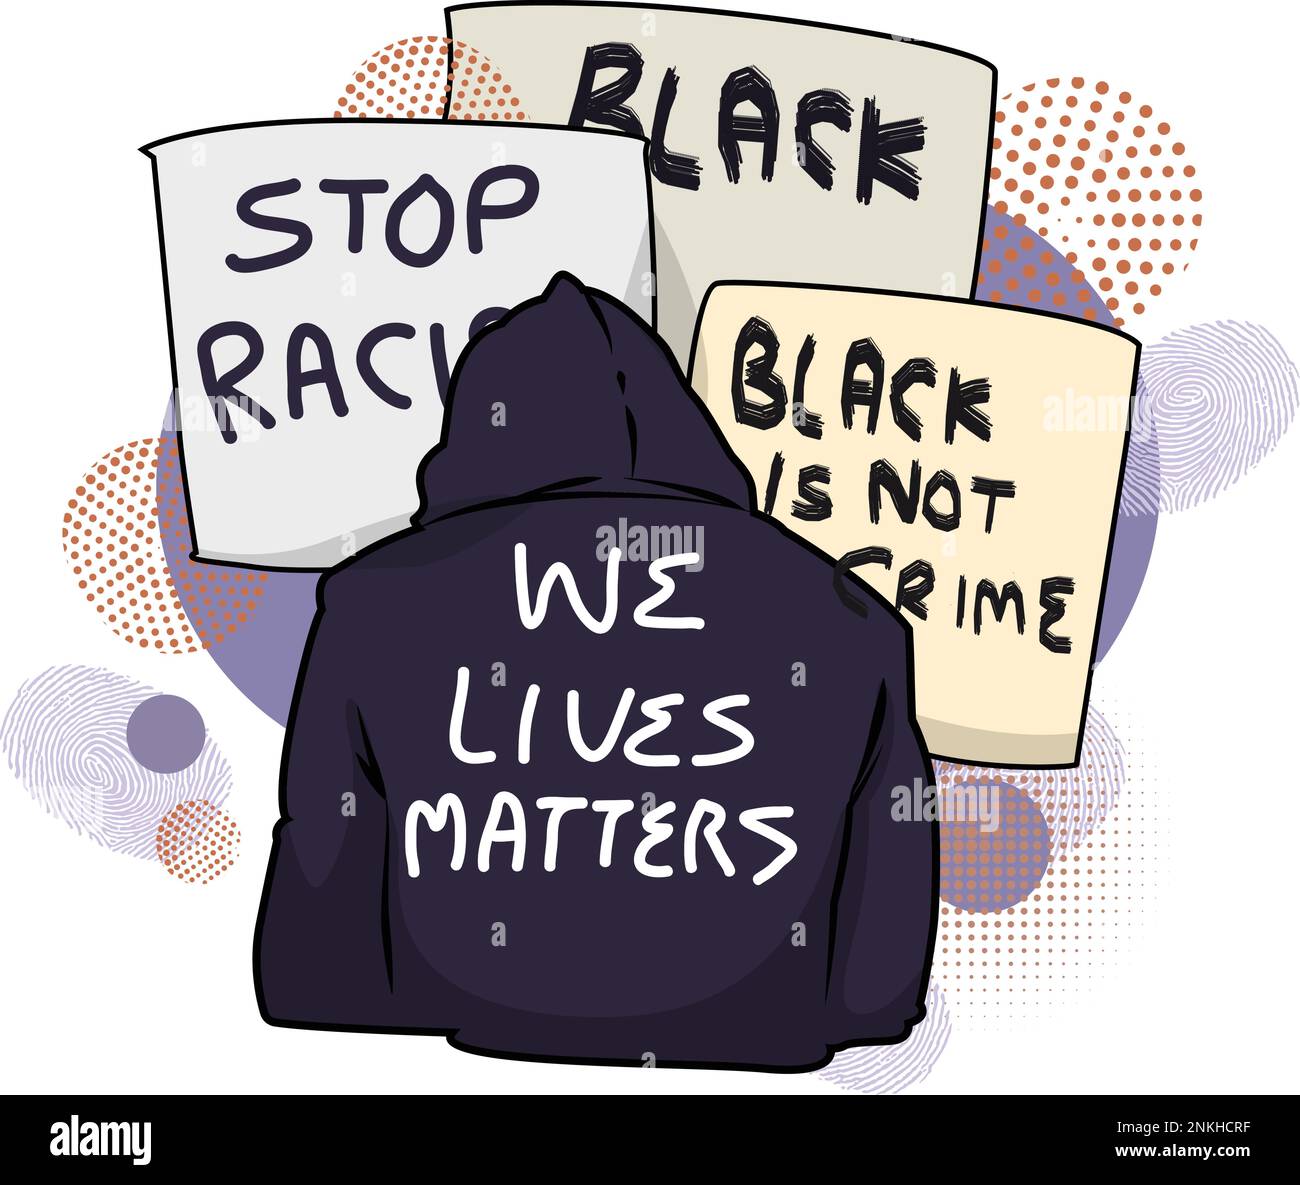 Black Lives Matter, BLM, No Racism, Statement. Giovani afroamericani: Uomo e donna contro il razzismo. I cittadini neri lottano per la parità. Illustrazione Vettoriale